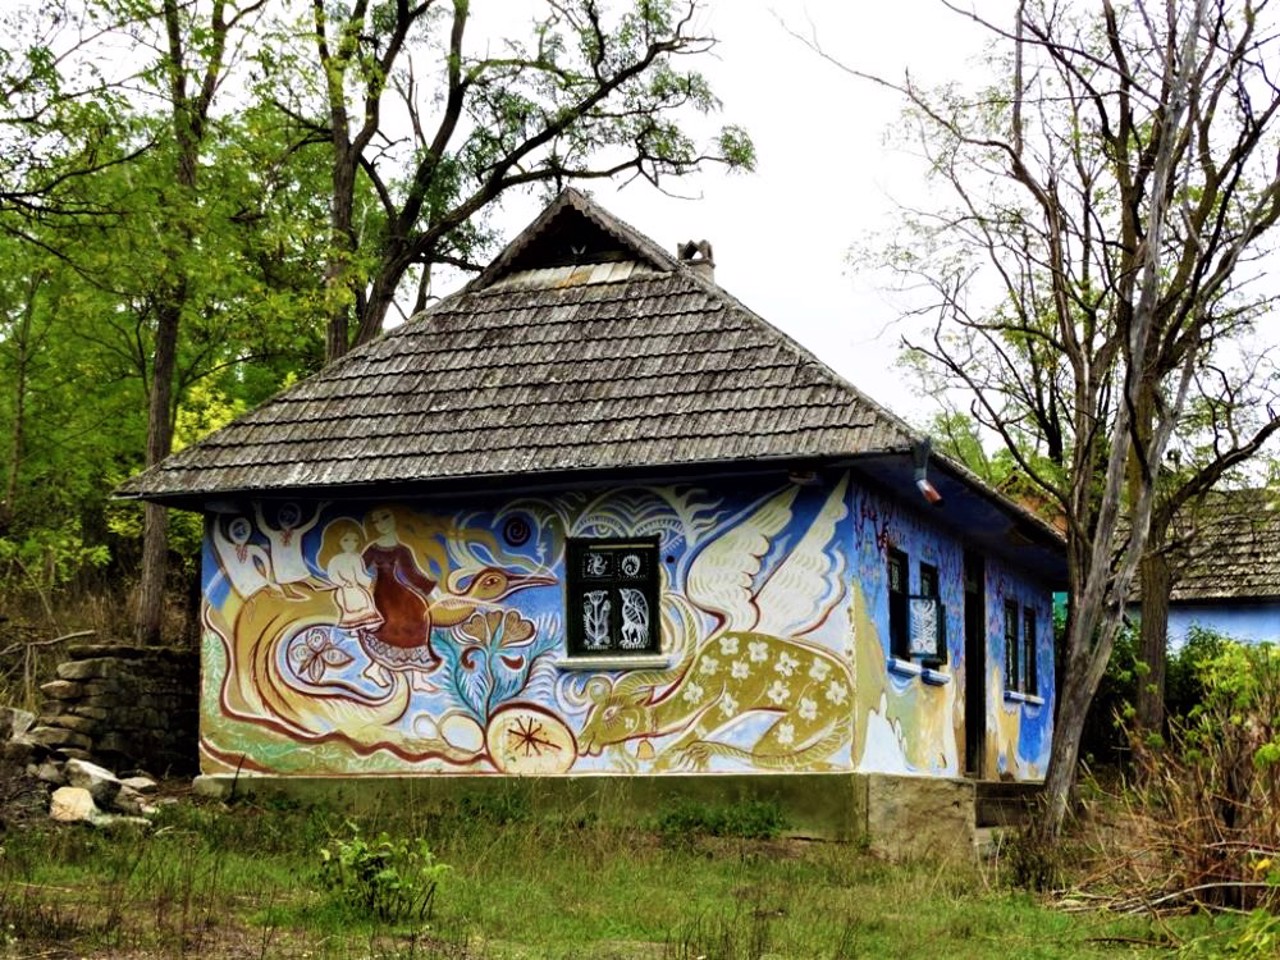 Bukatynka village